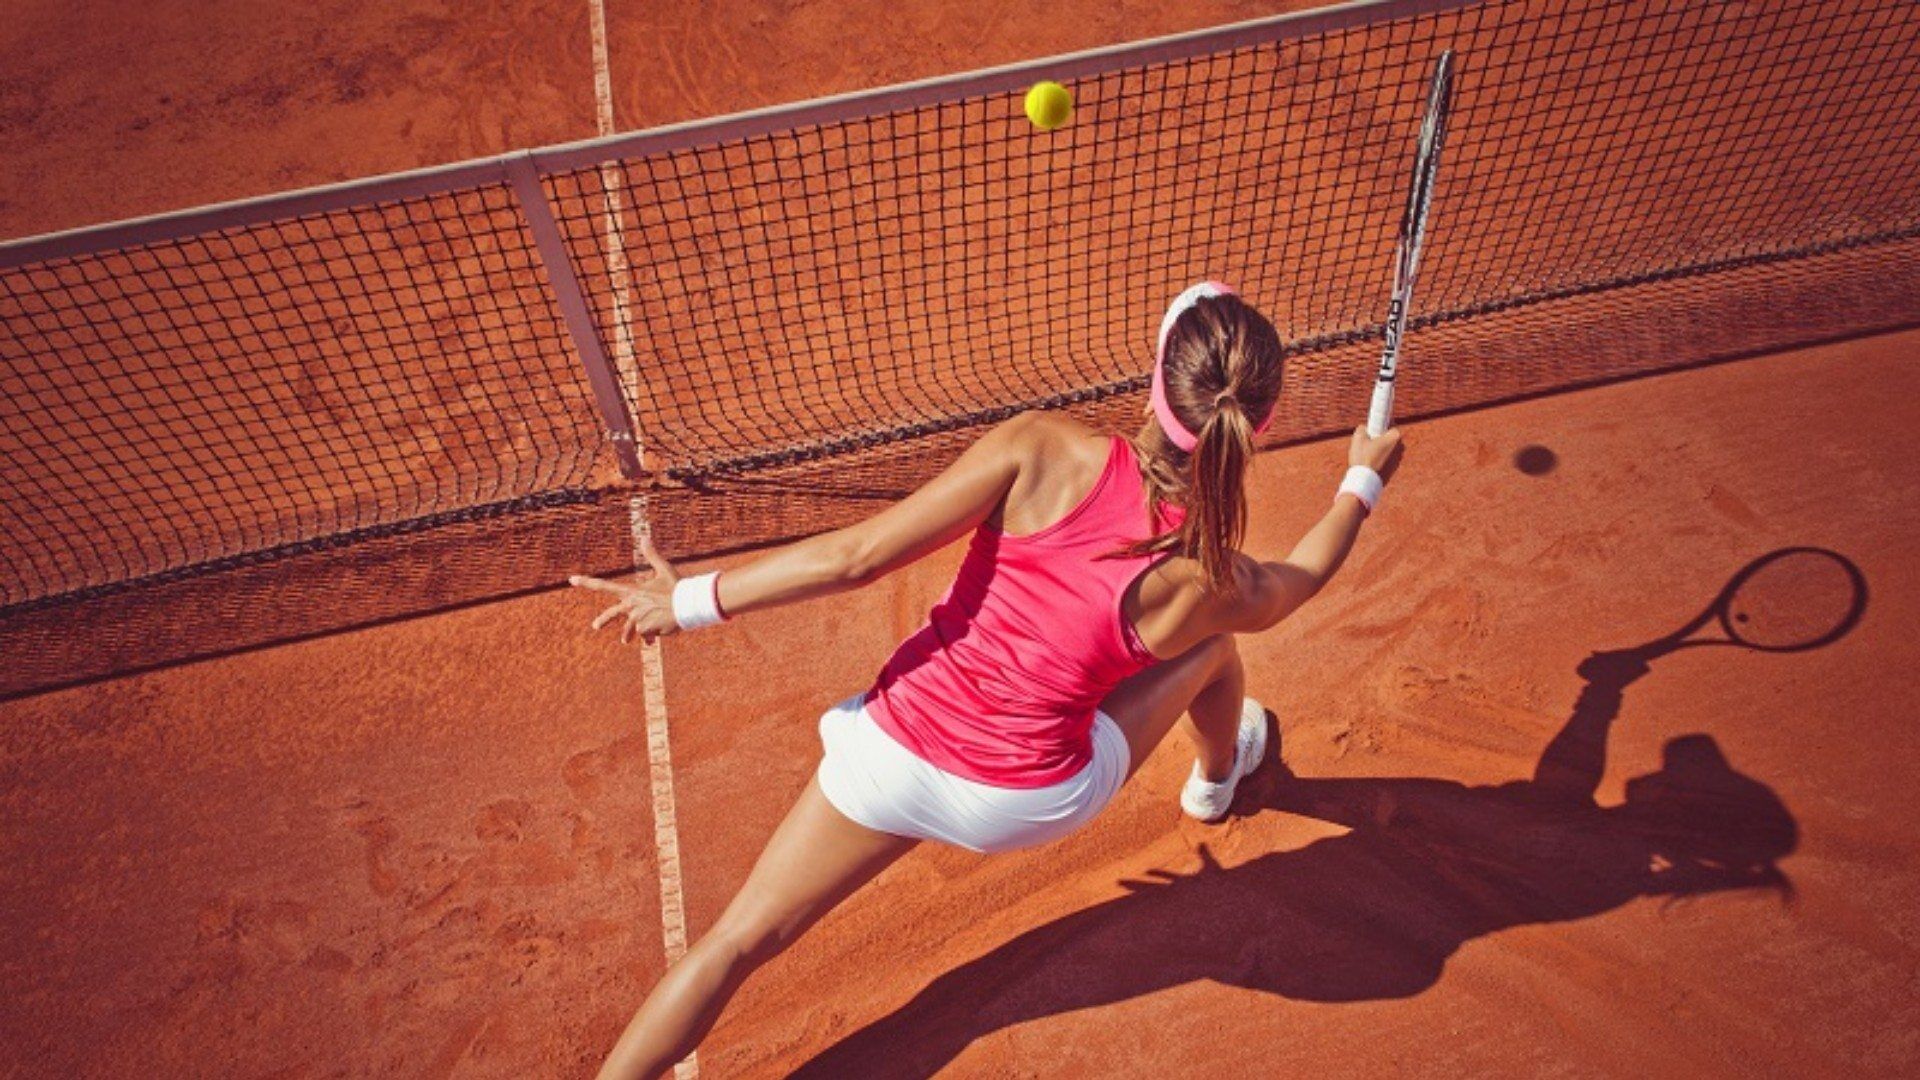 Tennisspielerin in Aktion während Sie einen Ball über das Netz schlägt im Hotel Gut Ising am Chiemsee.